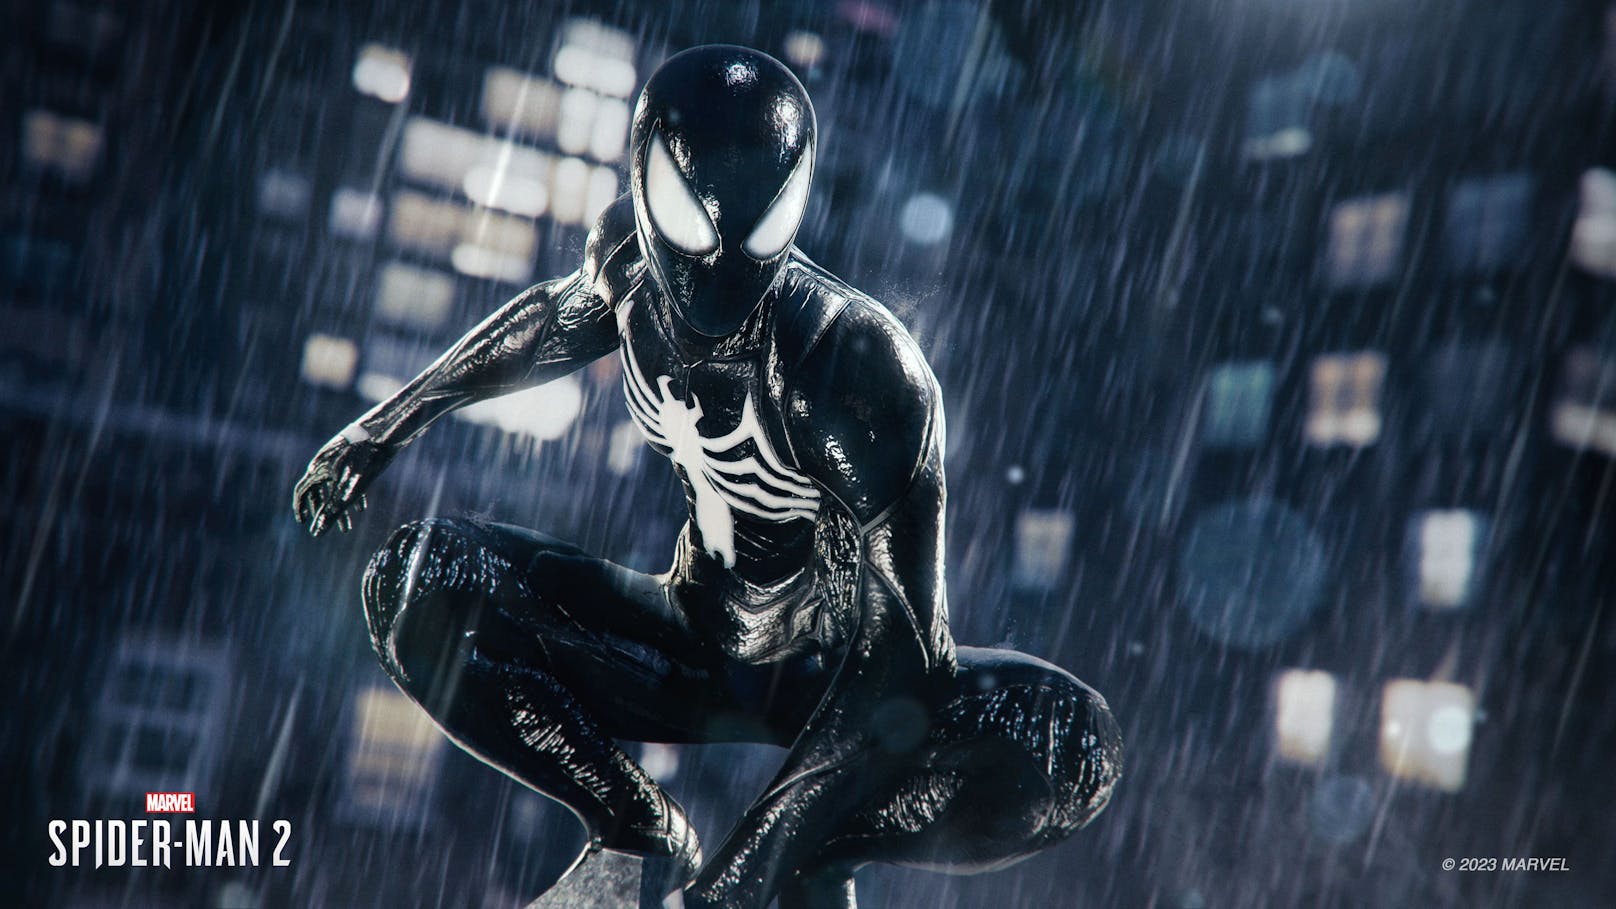 Gespielt wird weiter in Third-Person-Perspektive, wobei "Spider-Man 2" an die beiden Vorgänger anknüpft. So sind beide Spideys mittlerweile zu geliebten Helden und ...